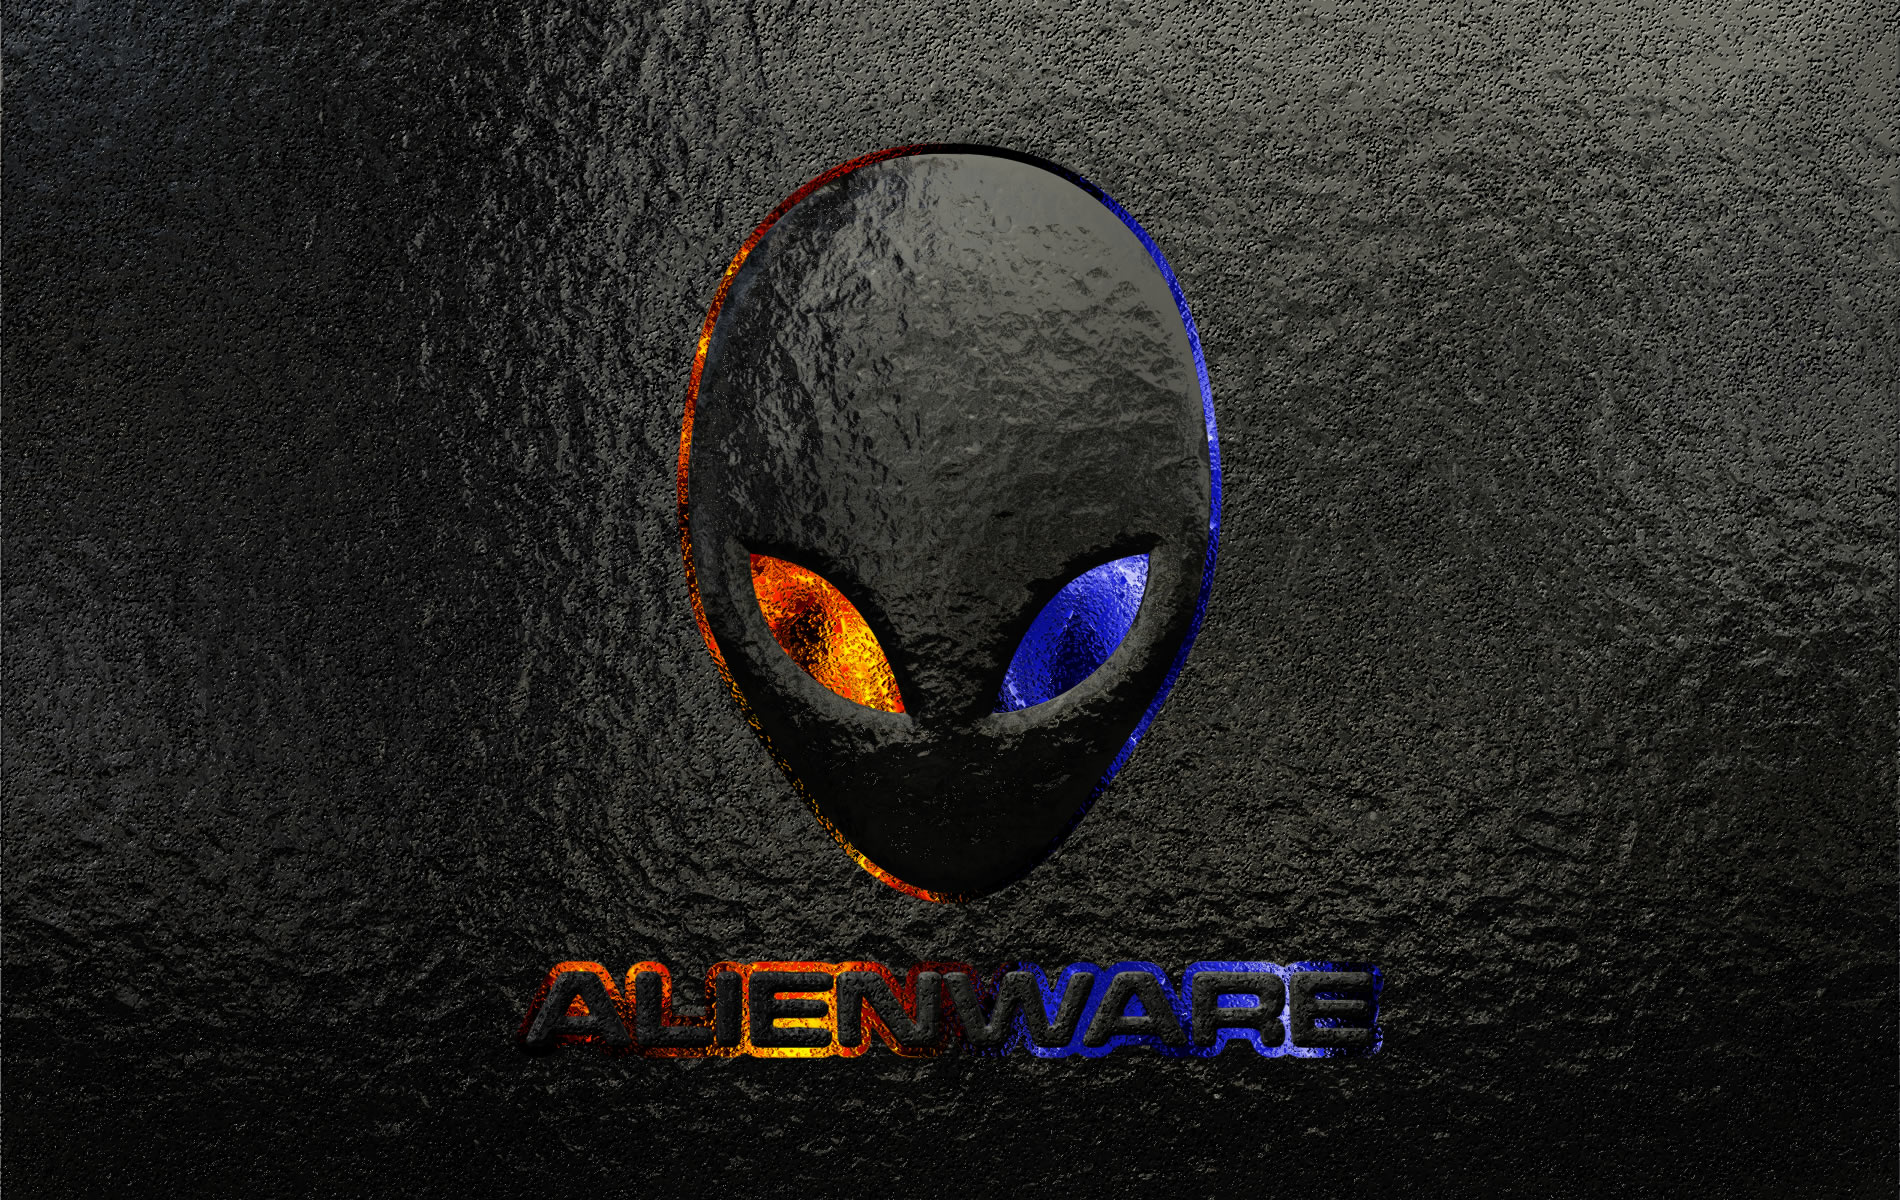 alienware, technology, logo 4K Ultra